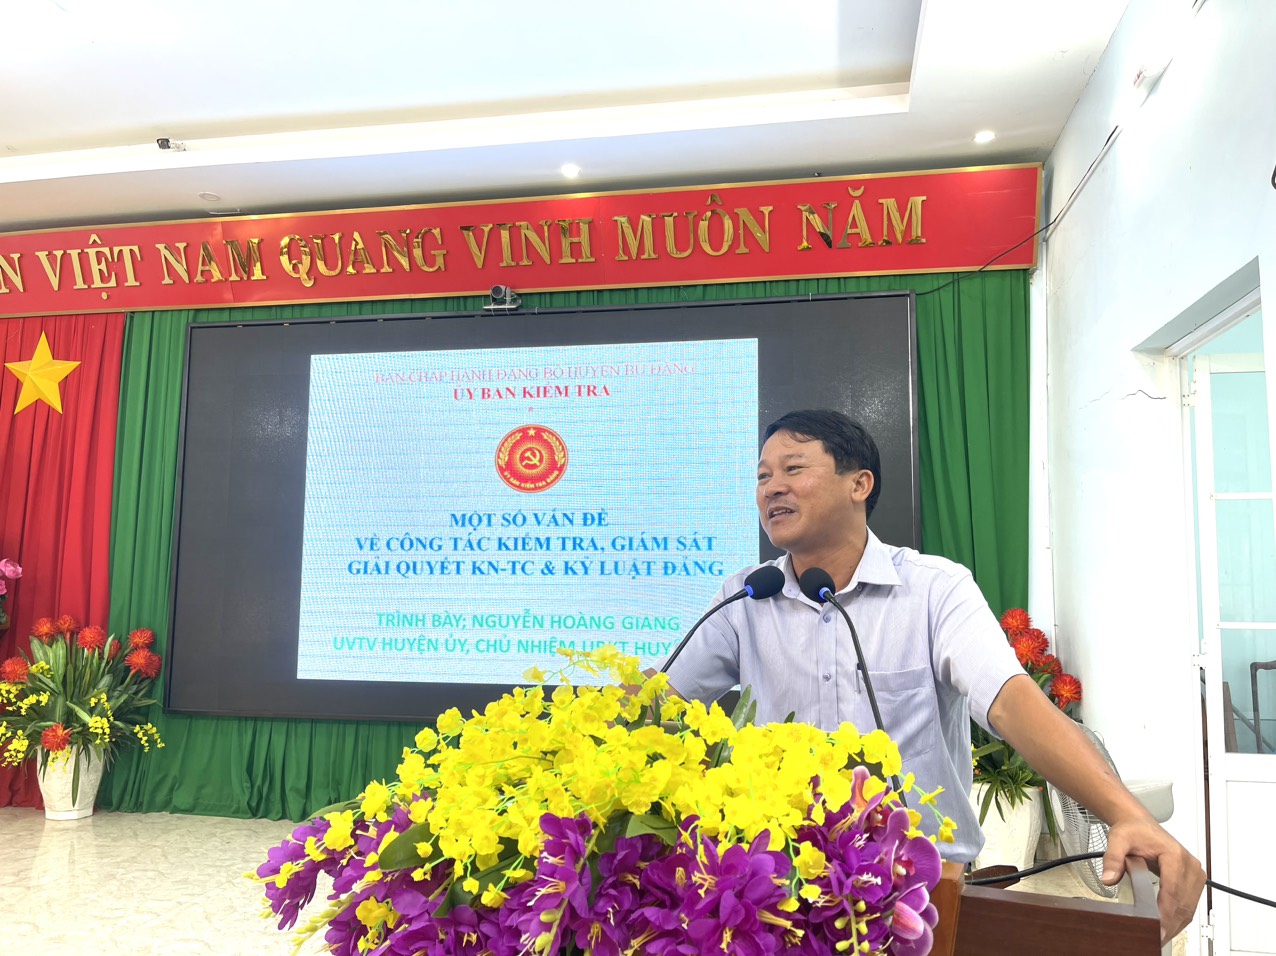 Đồng chí Nguyễn Hoàng Giang - UVTV, Chủ nhiệm UBKT Huyện uỷ, báo cáo viên tại lớp tập huấn